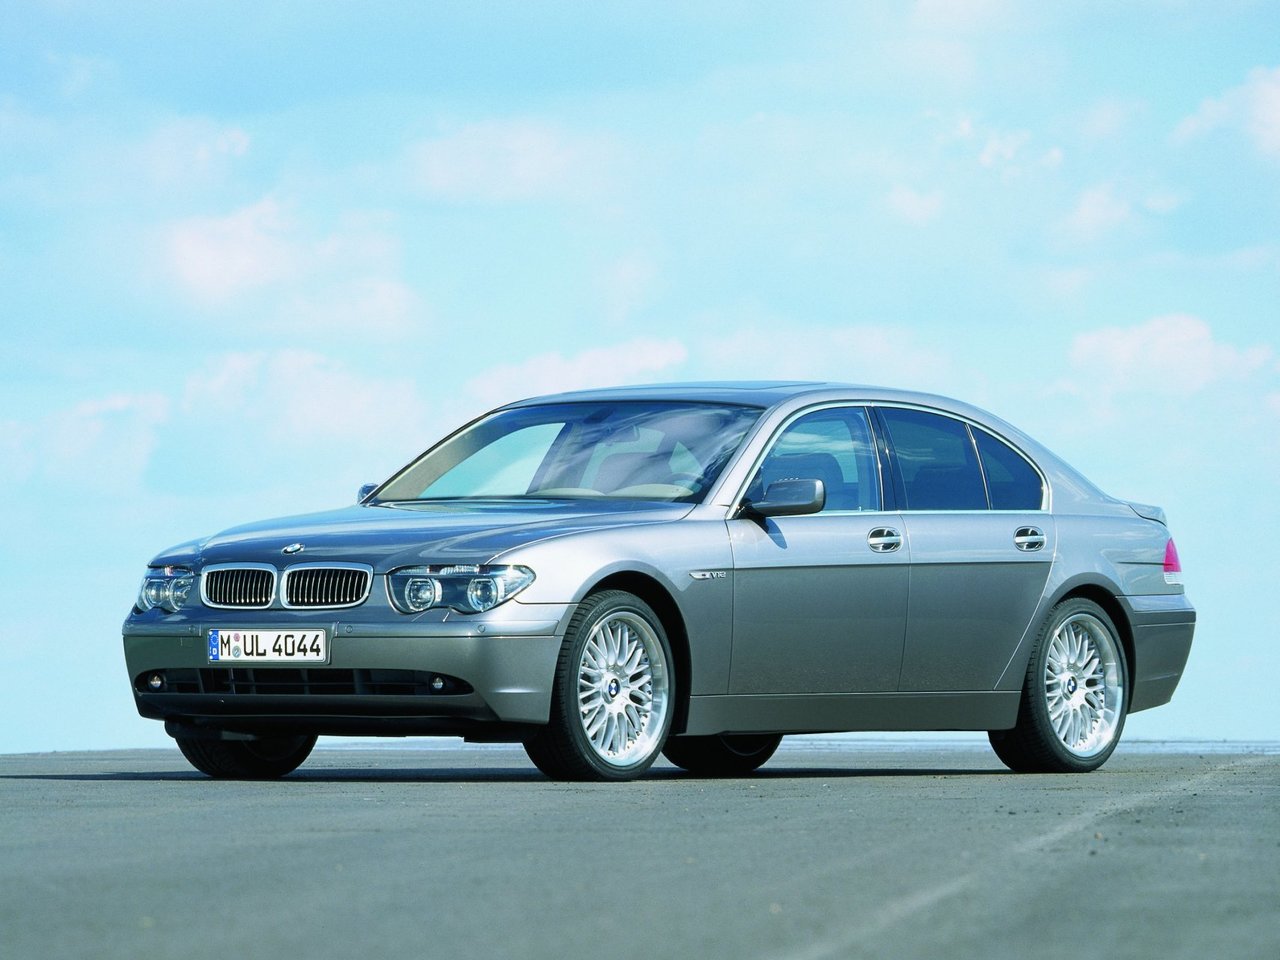 Расход газа четырёх комплектаций седана BMW 7 серия. Разница стоимости заправки газом и бензином. Автономный пробег до и после установки ГБО.